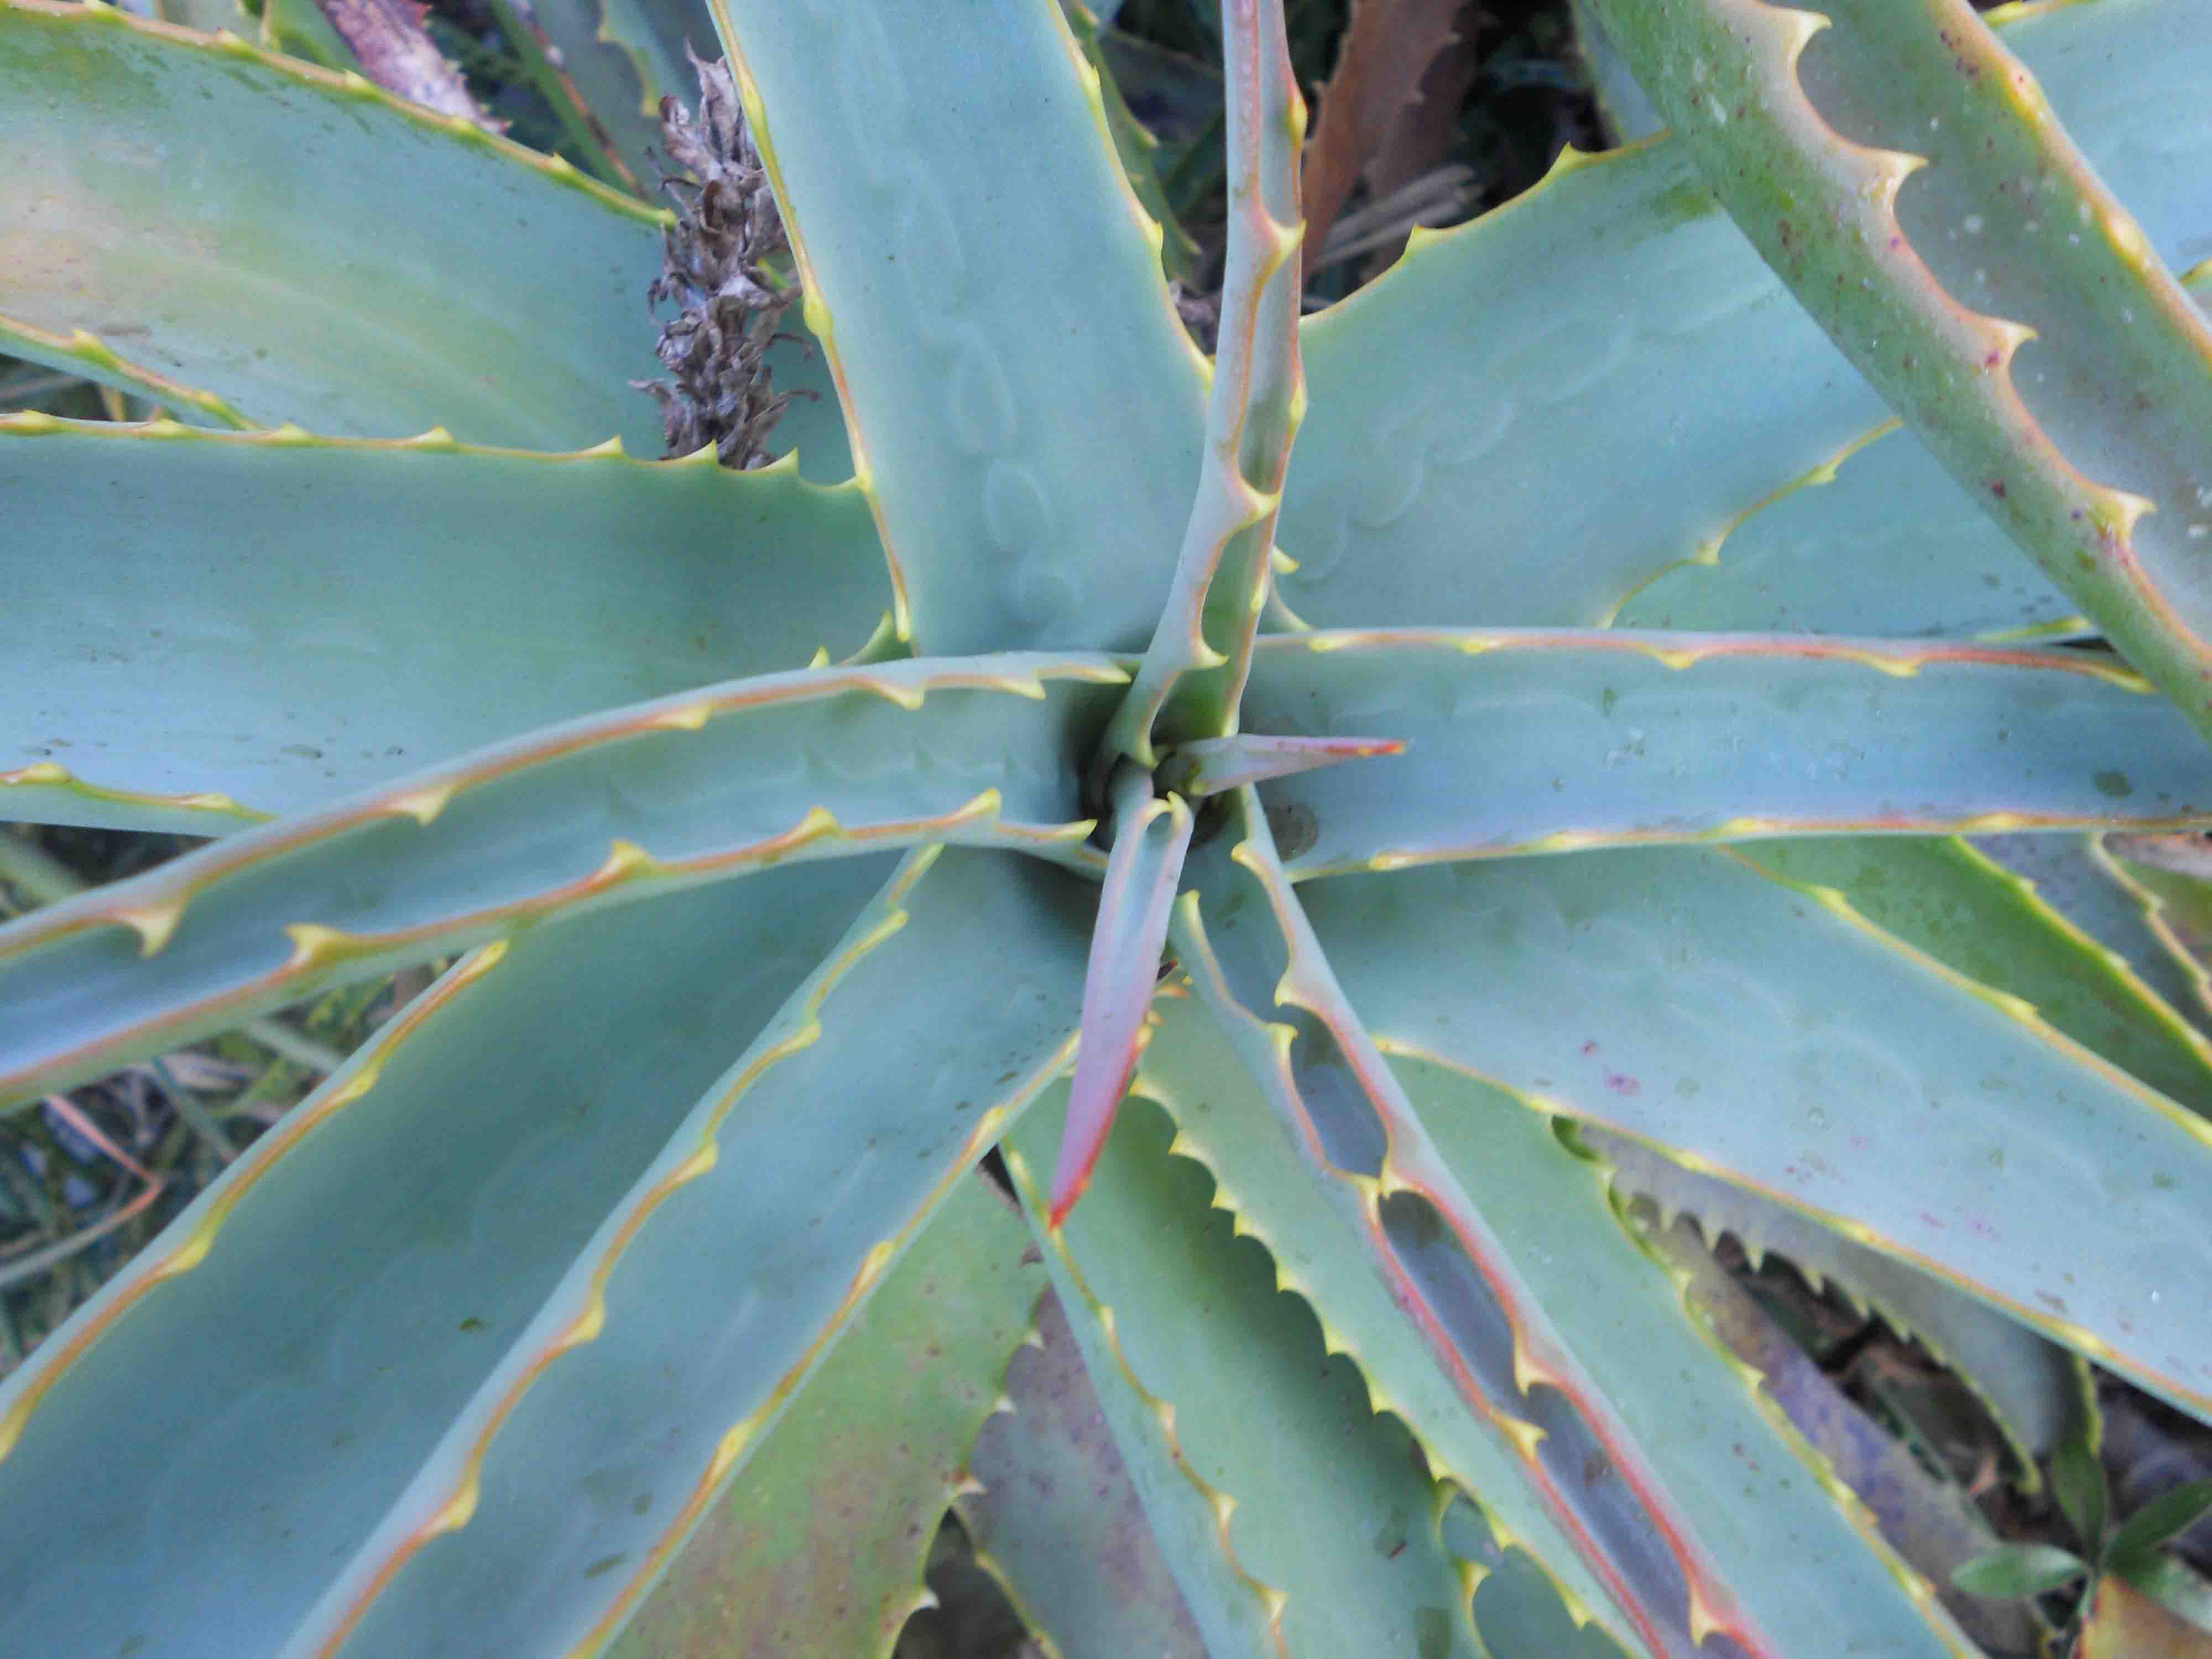 Aloe cfr. arborescens (Asparagales - Xanthrrhoesceae)